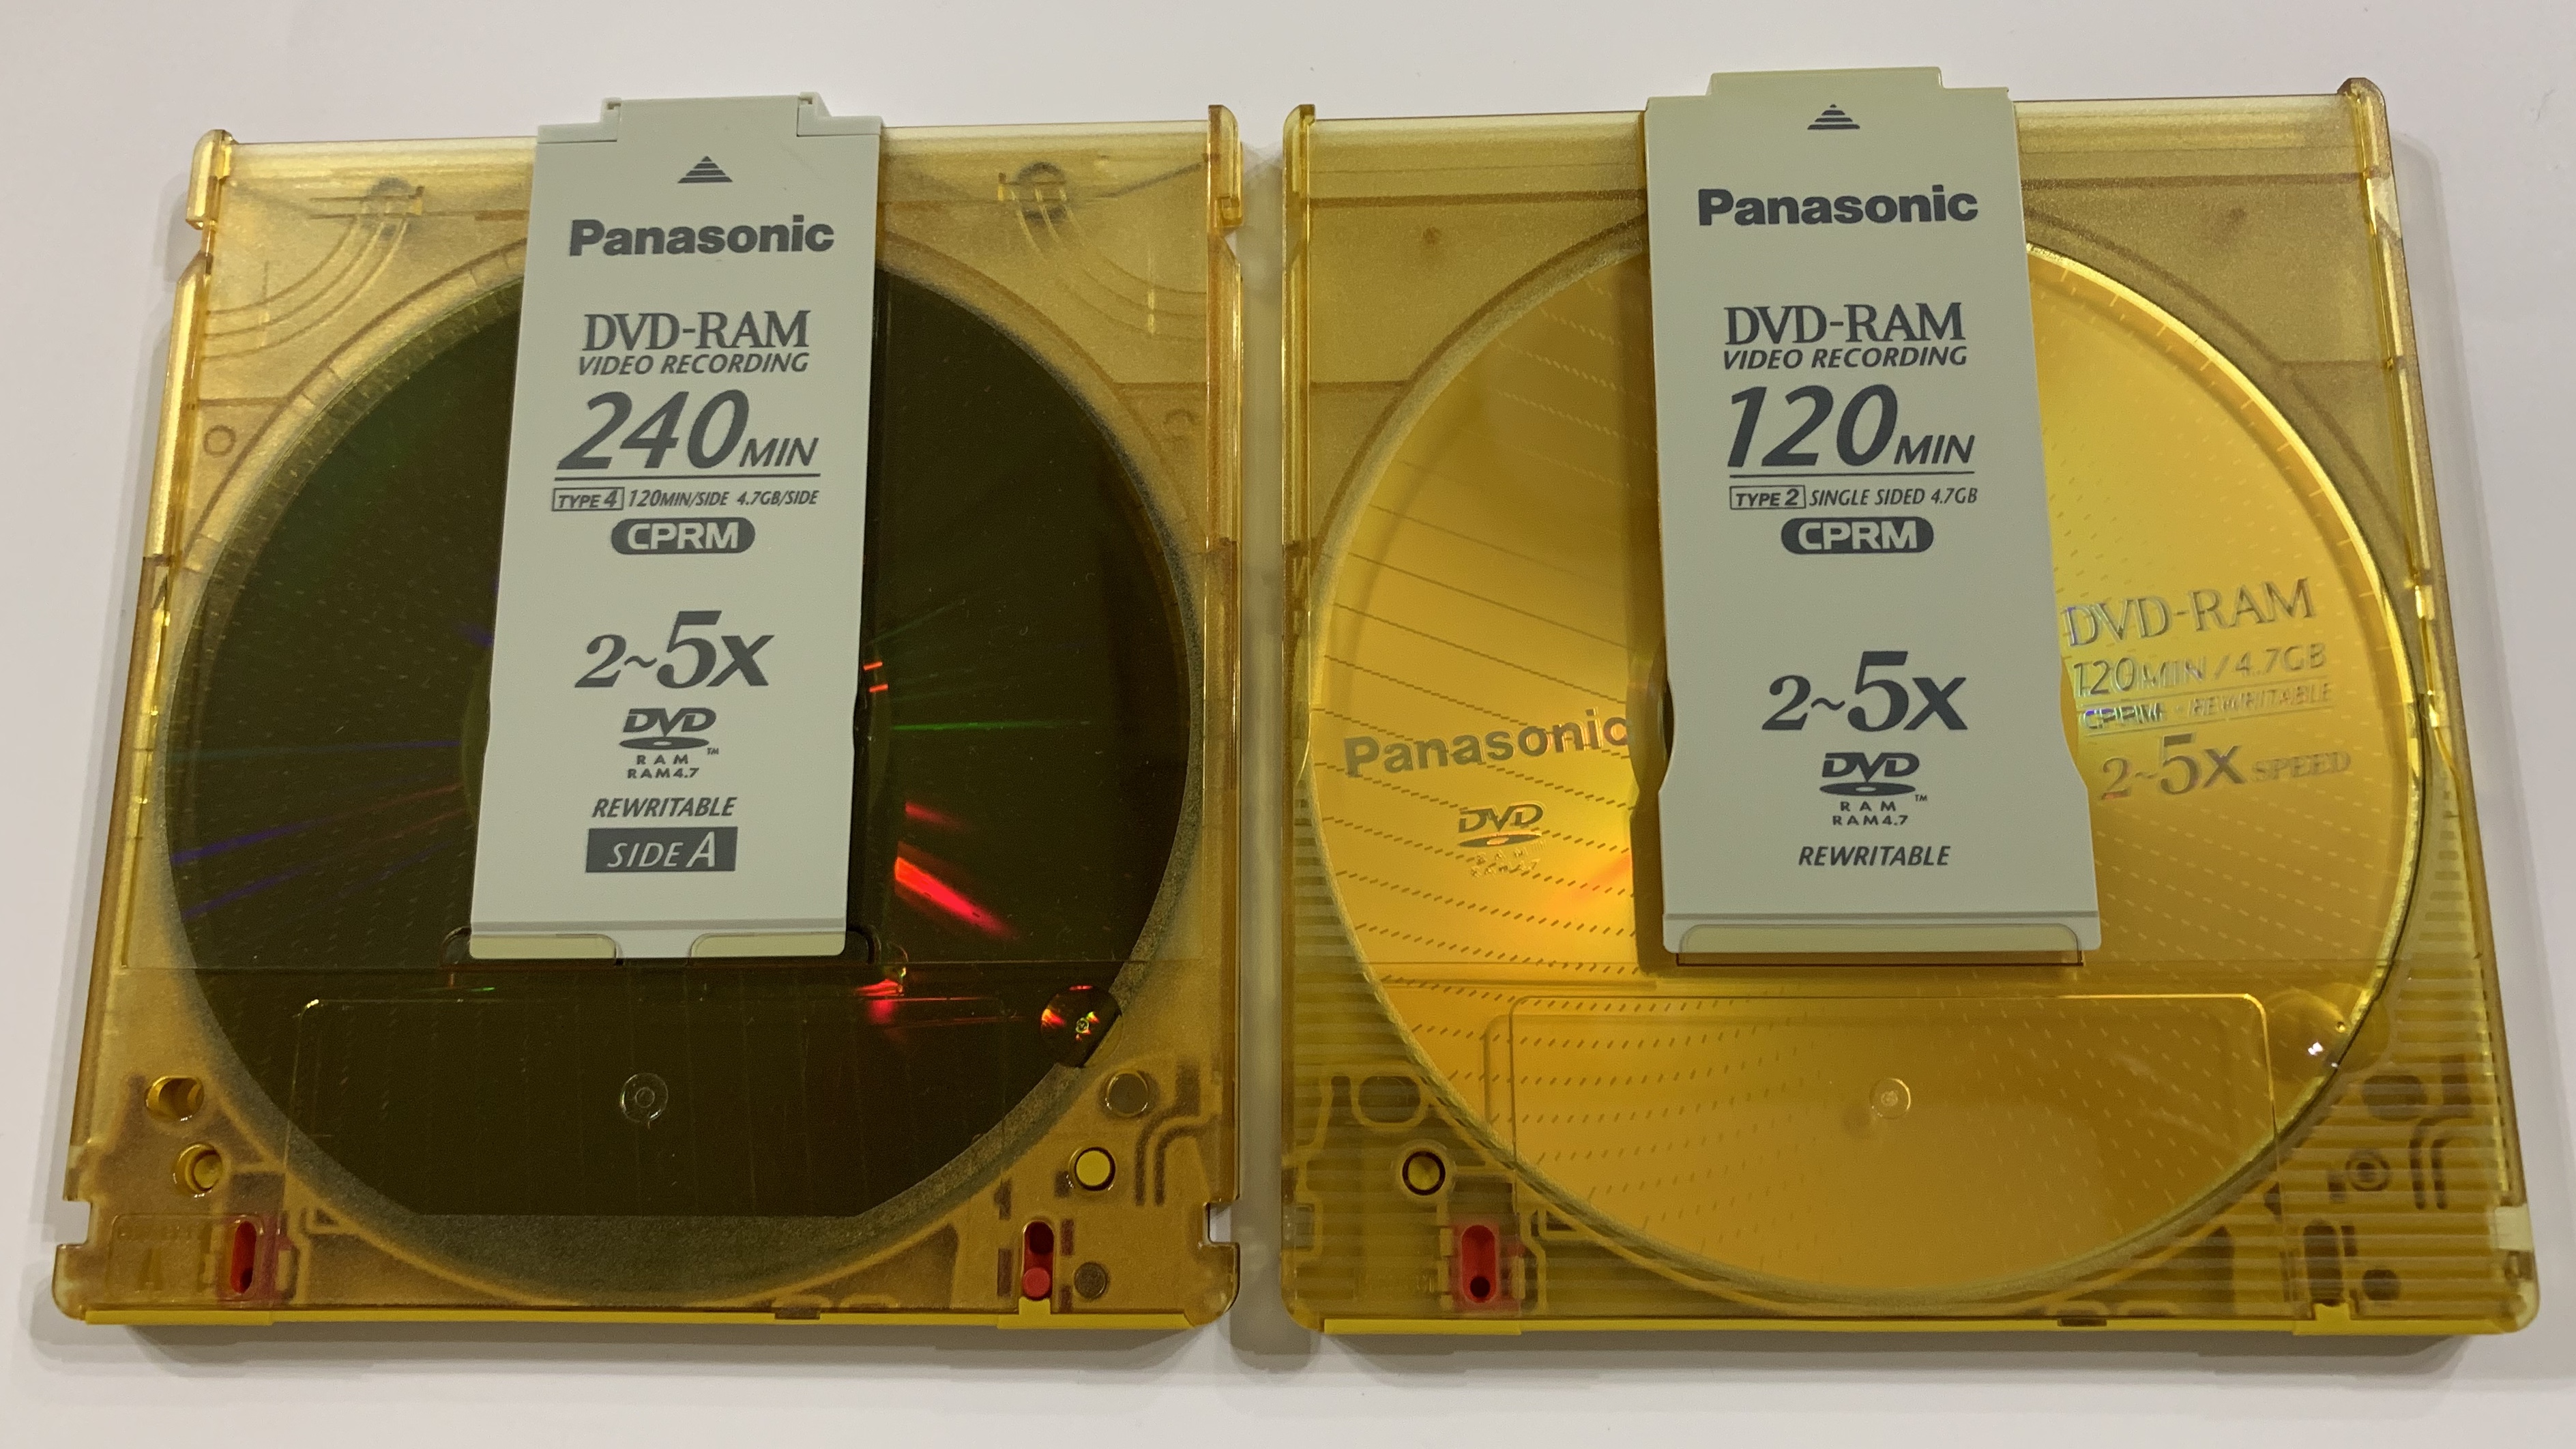 ファイル:Panasonic DVD-RAM 120min & 240min.jpg - Wikipedia